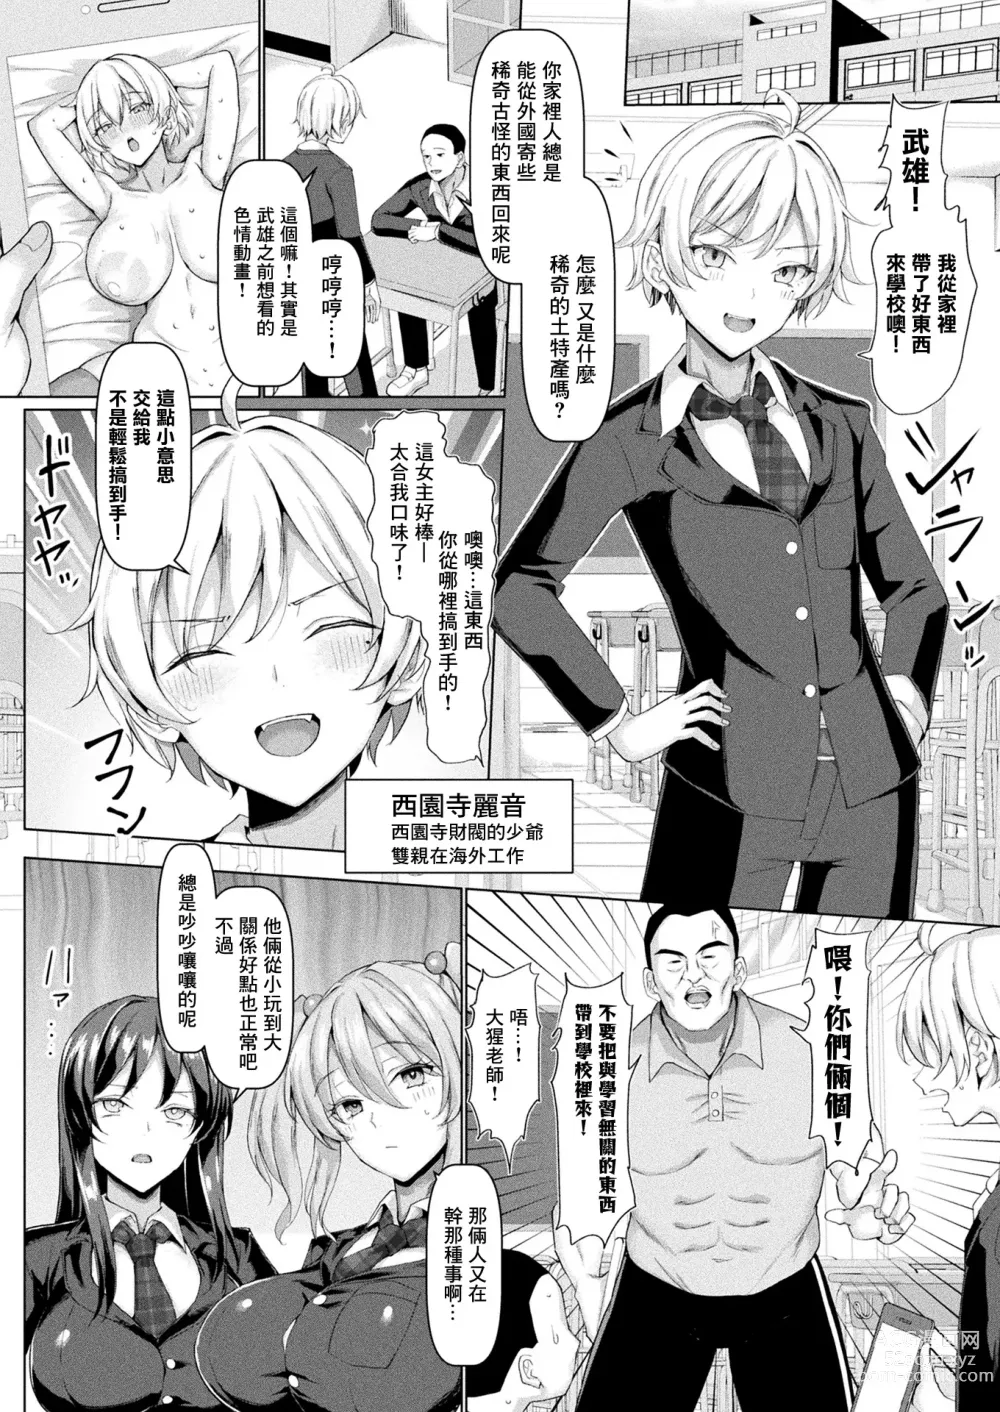 Page 3 of manga Mabudachi Nagachichi Daihenshin